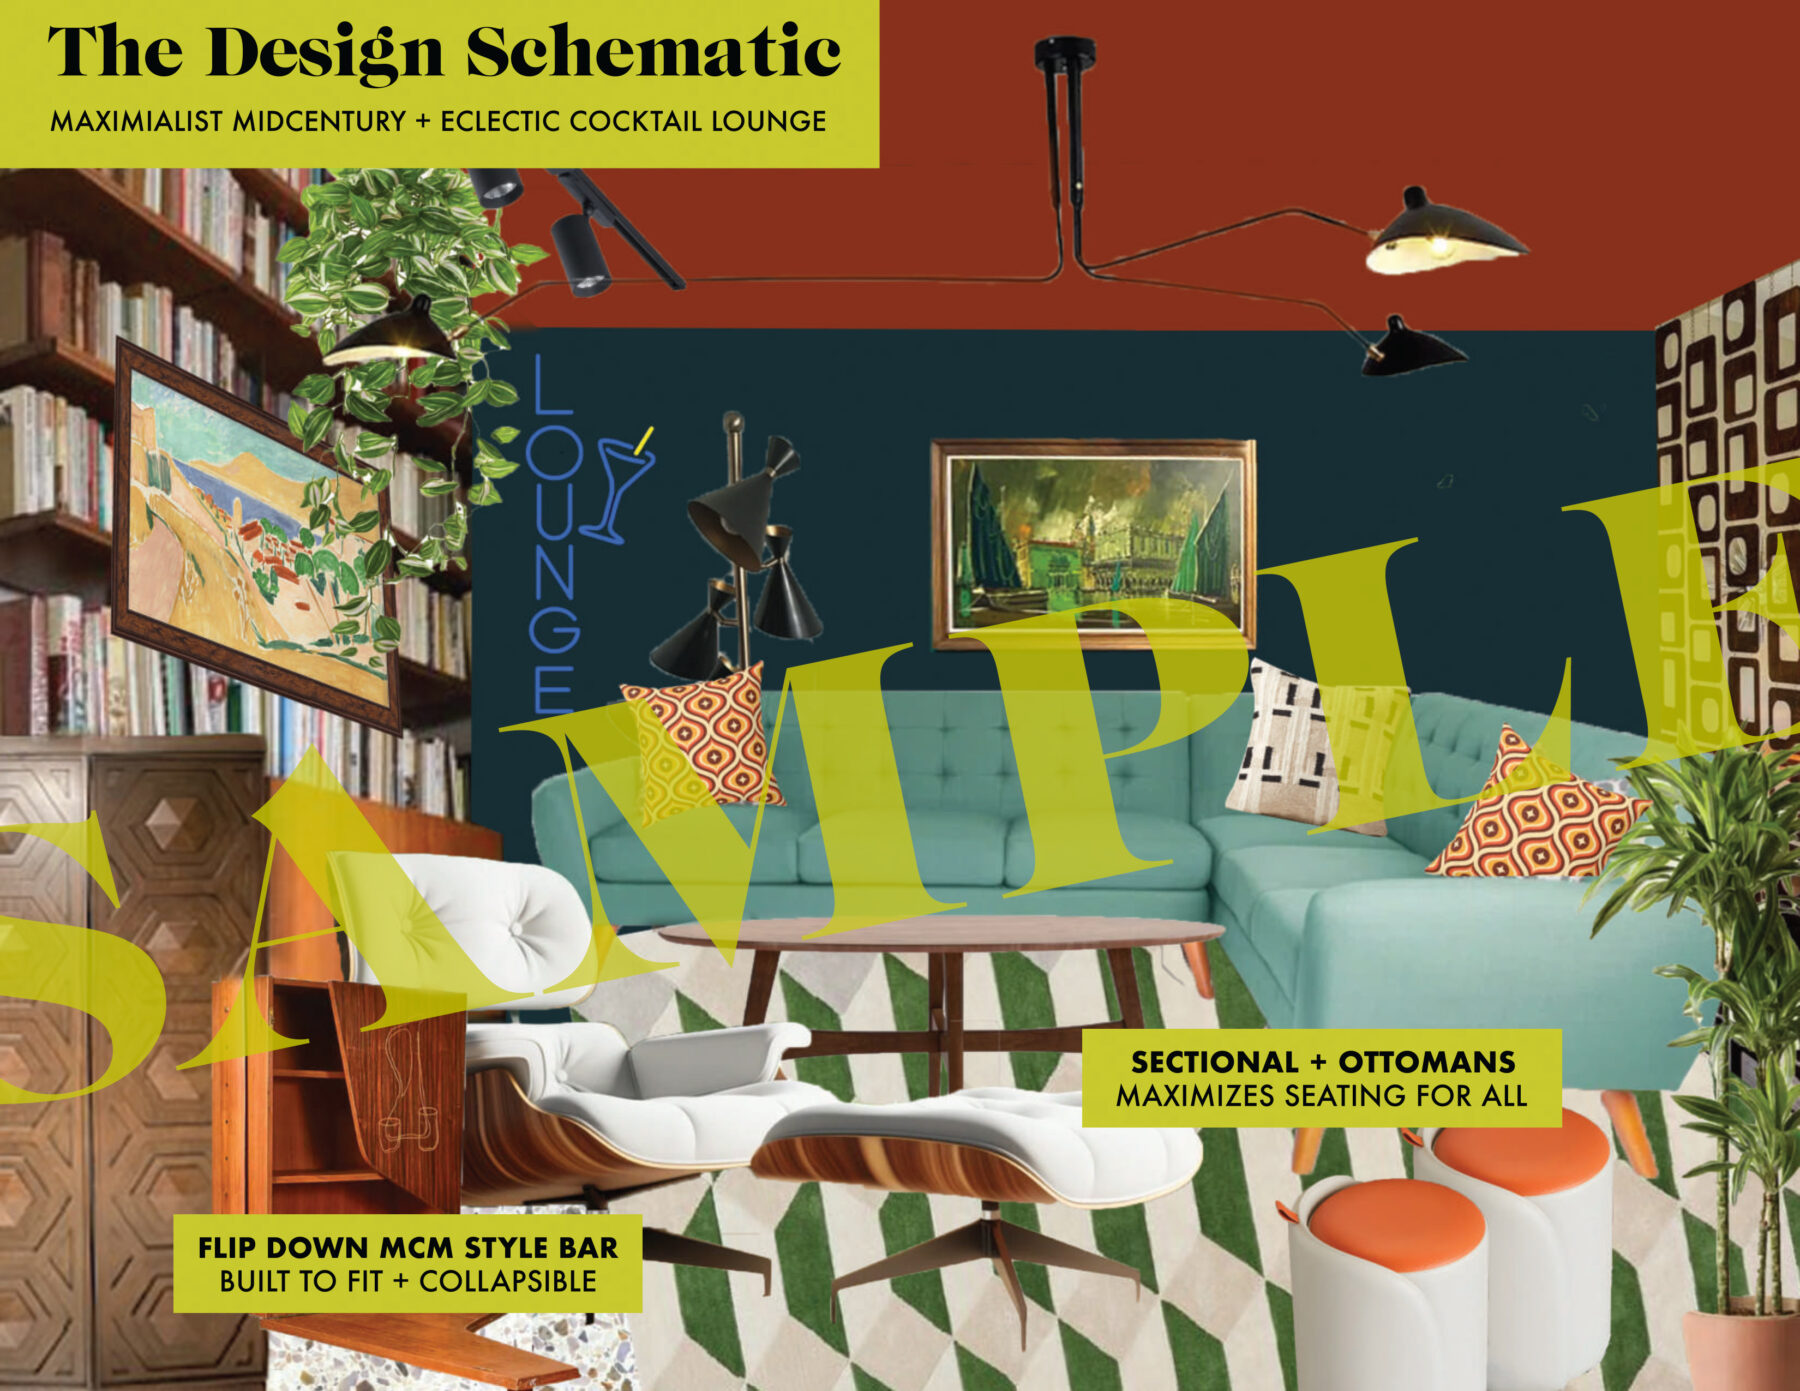 Designed to Dwell | E-Decor | E-Design | Virtual Home Designer | Online Interior Design | Home Design Support | Virtual Design Consults | Online Design Consultation | Jessica Brigham | Design Wildly